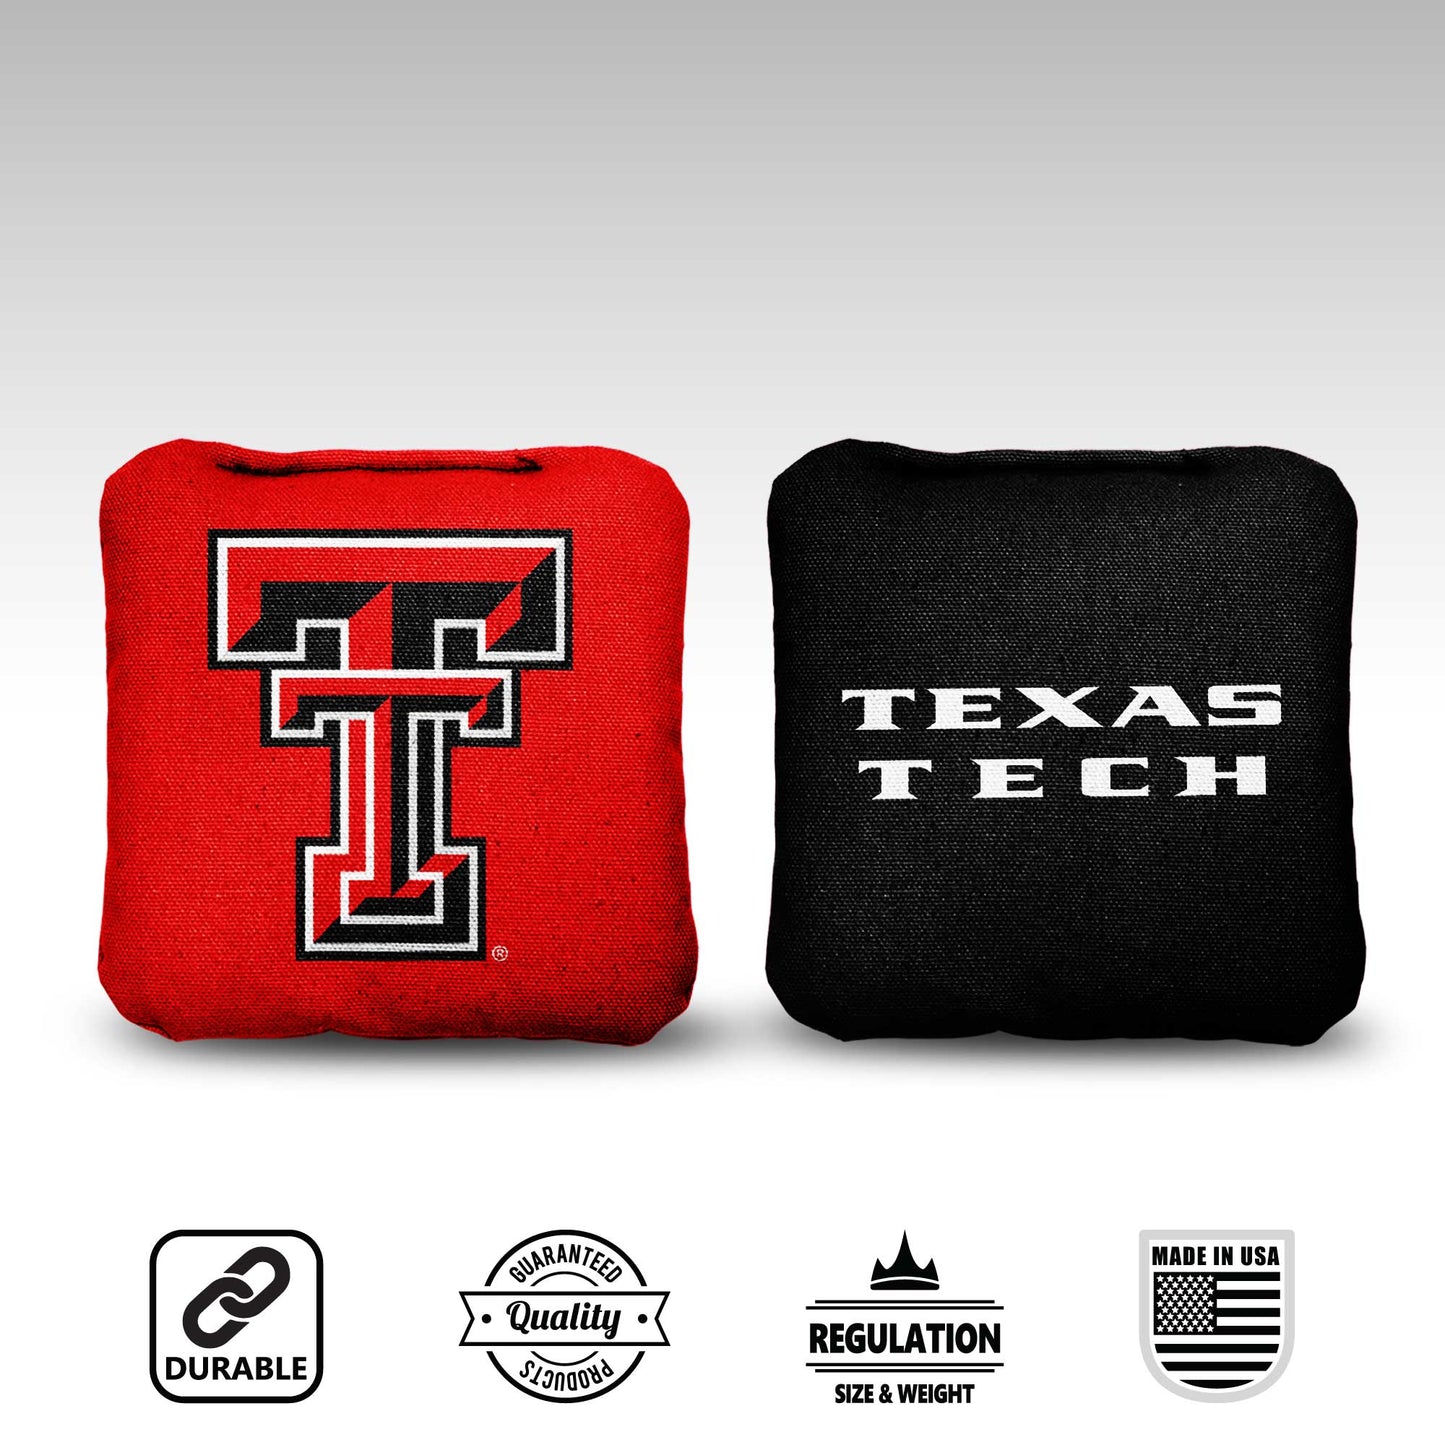 Texas Tech University Cornhole Bags - 8 Cornhole Bags